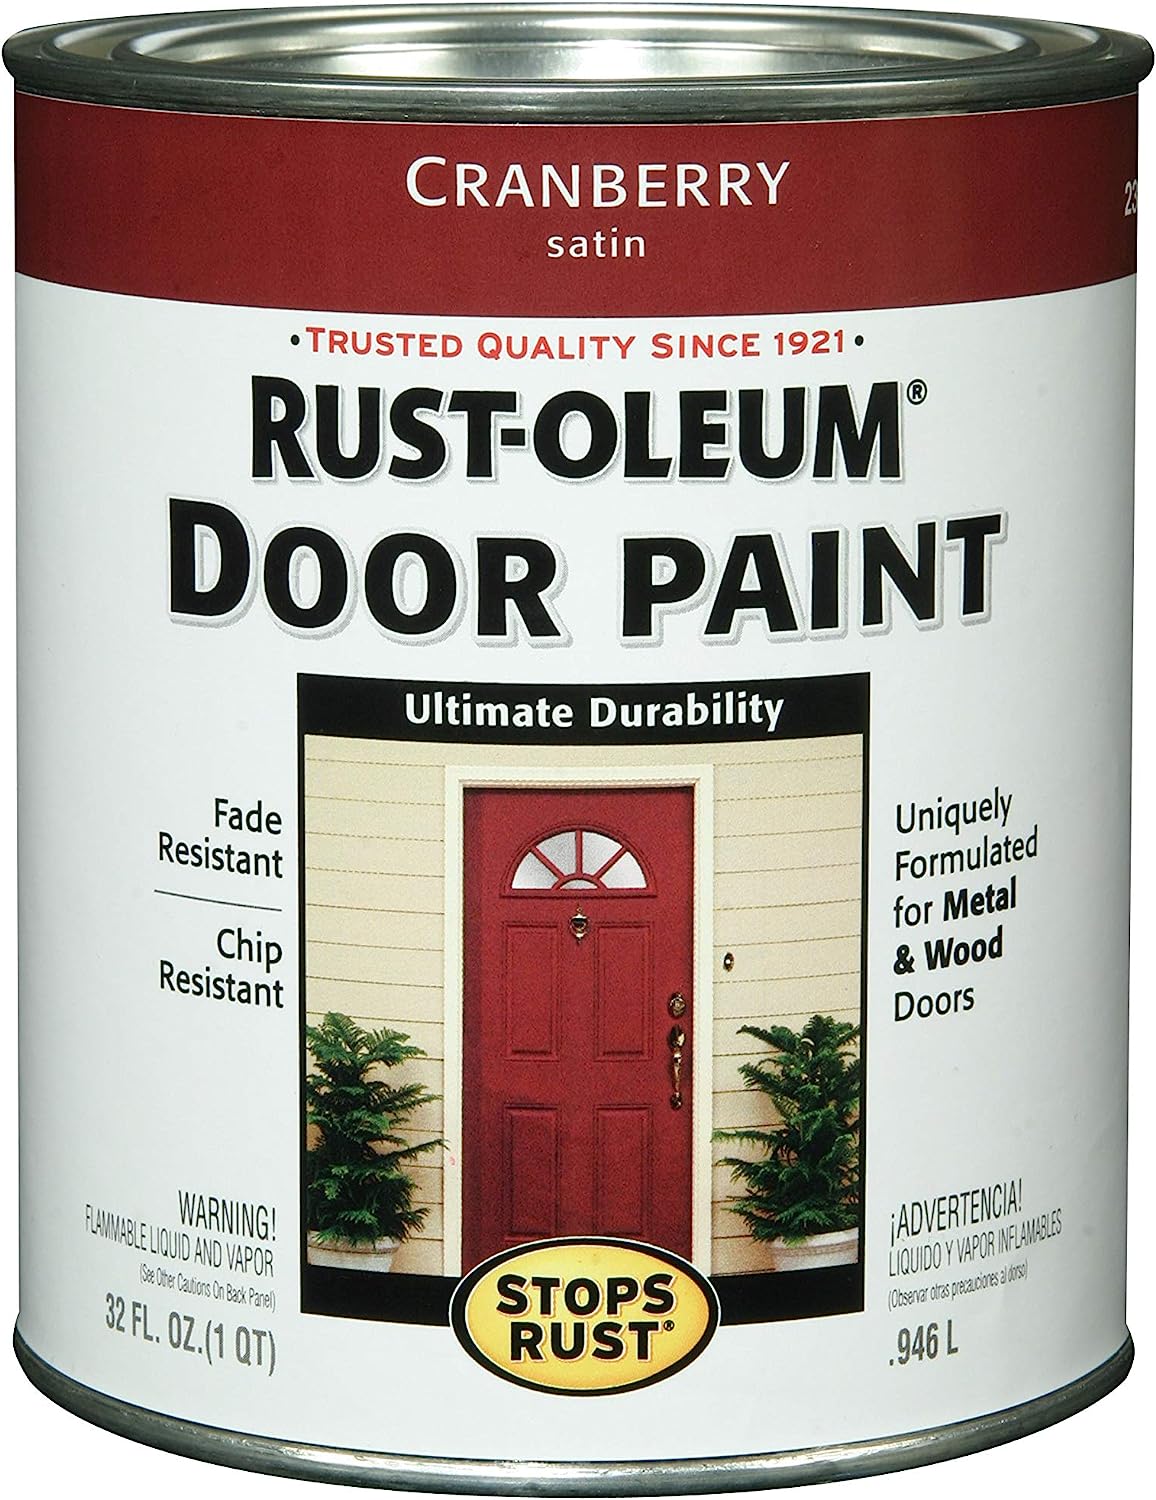 Rust-Oleum Stops Rust Front 238314 Enamel Door Paint, [...]